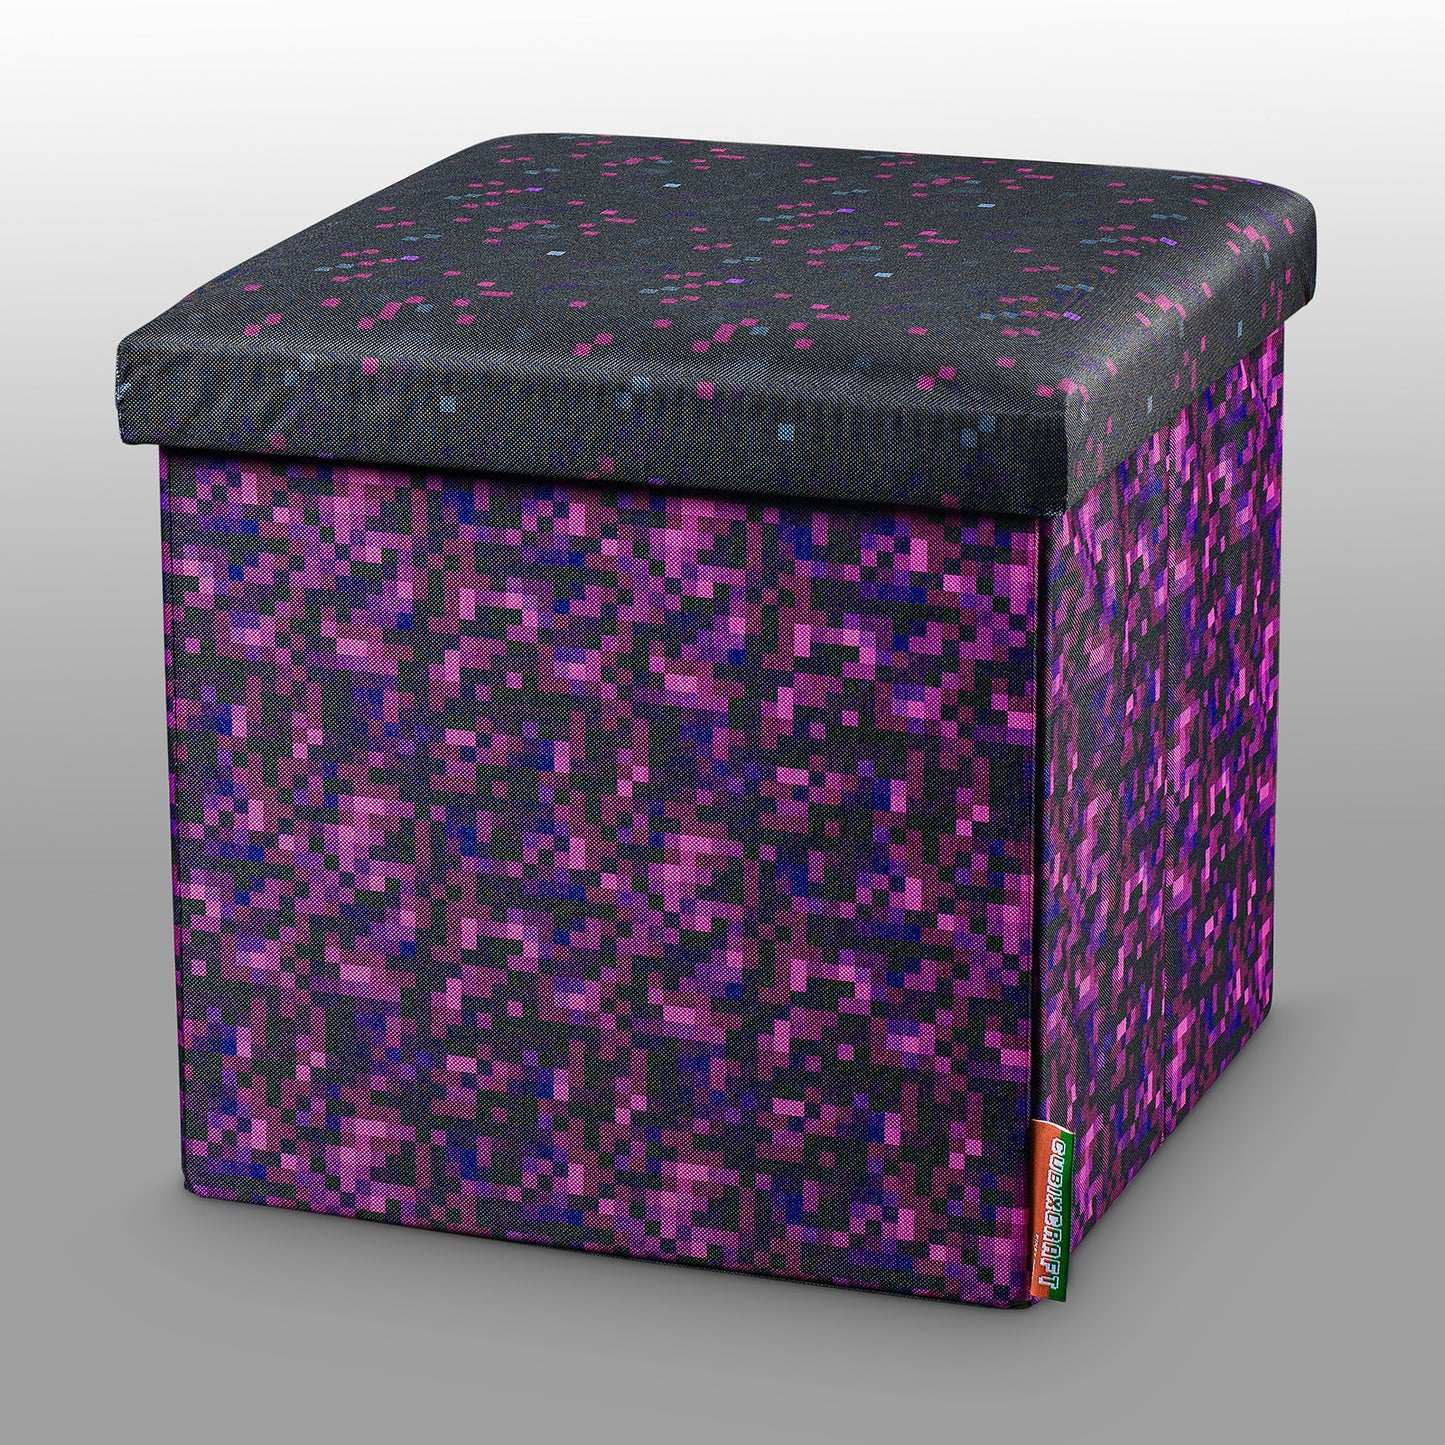 Seat cube box in pixel design "mystical fog"